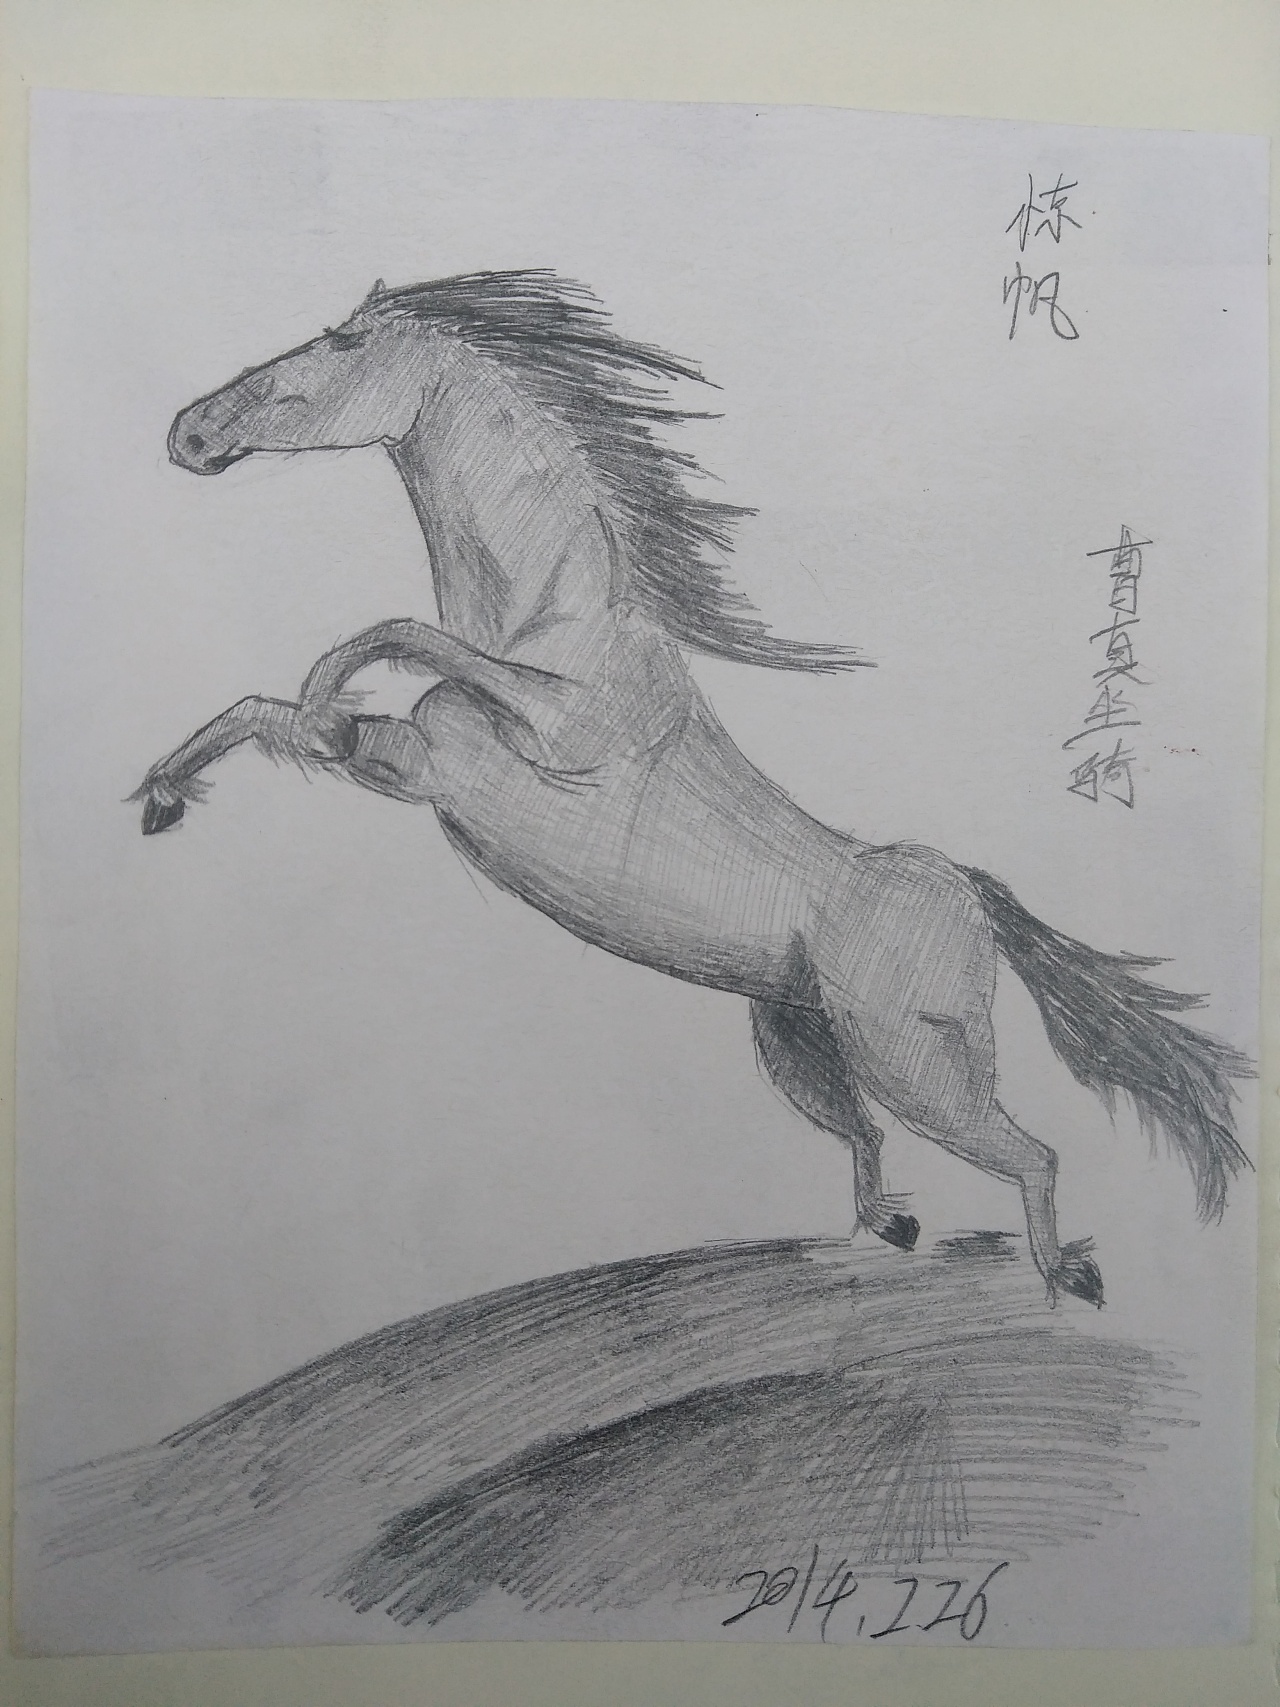 一匹出色的马绘画图片